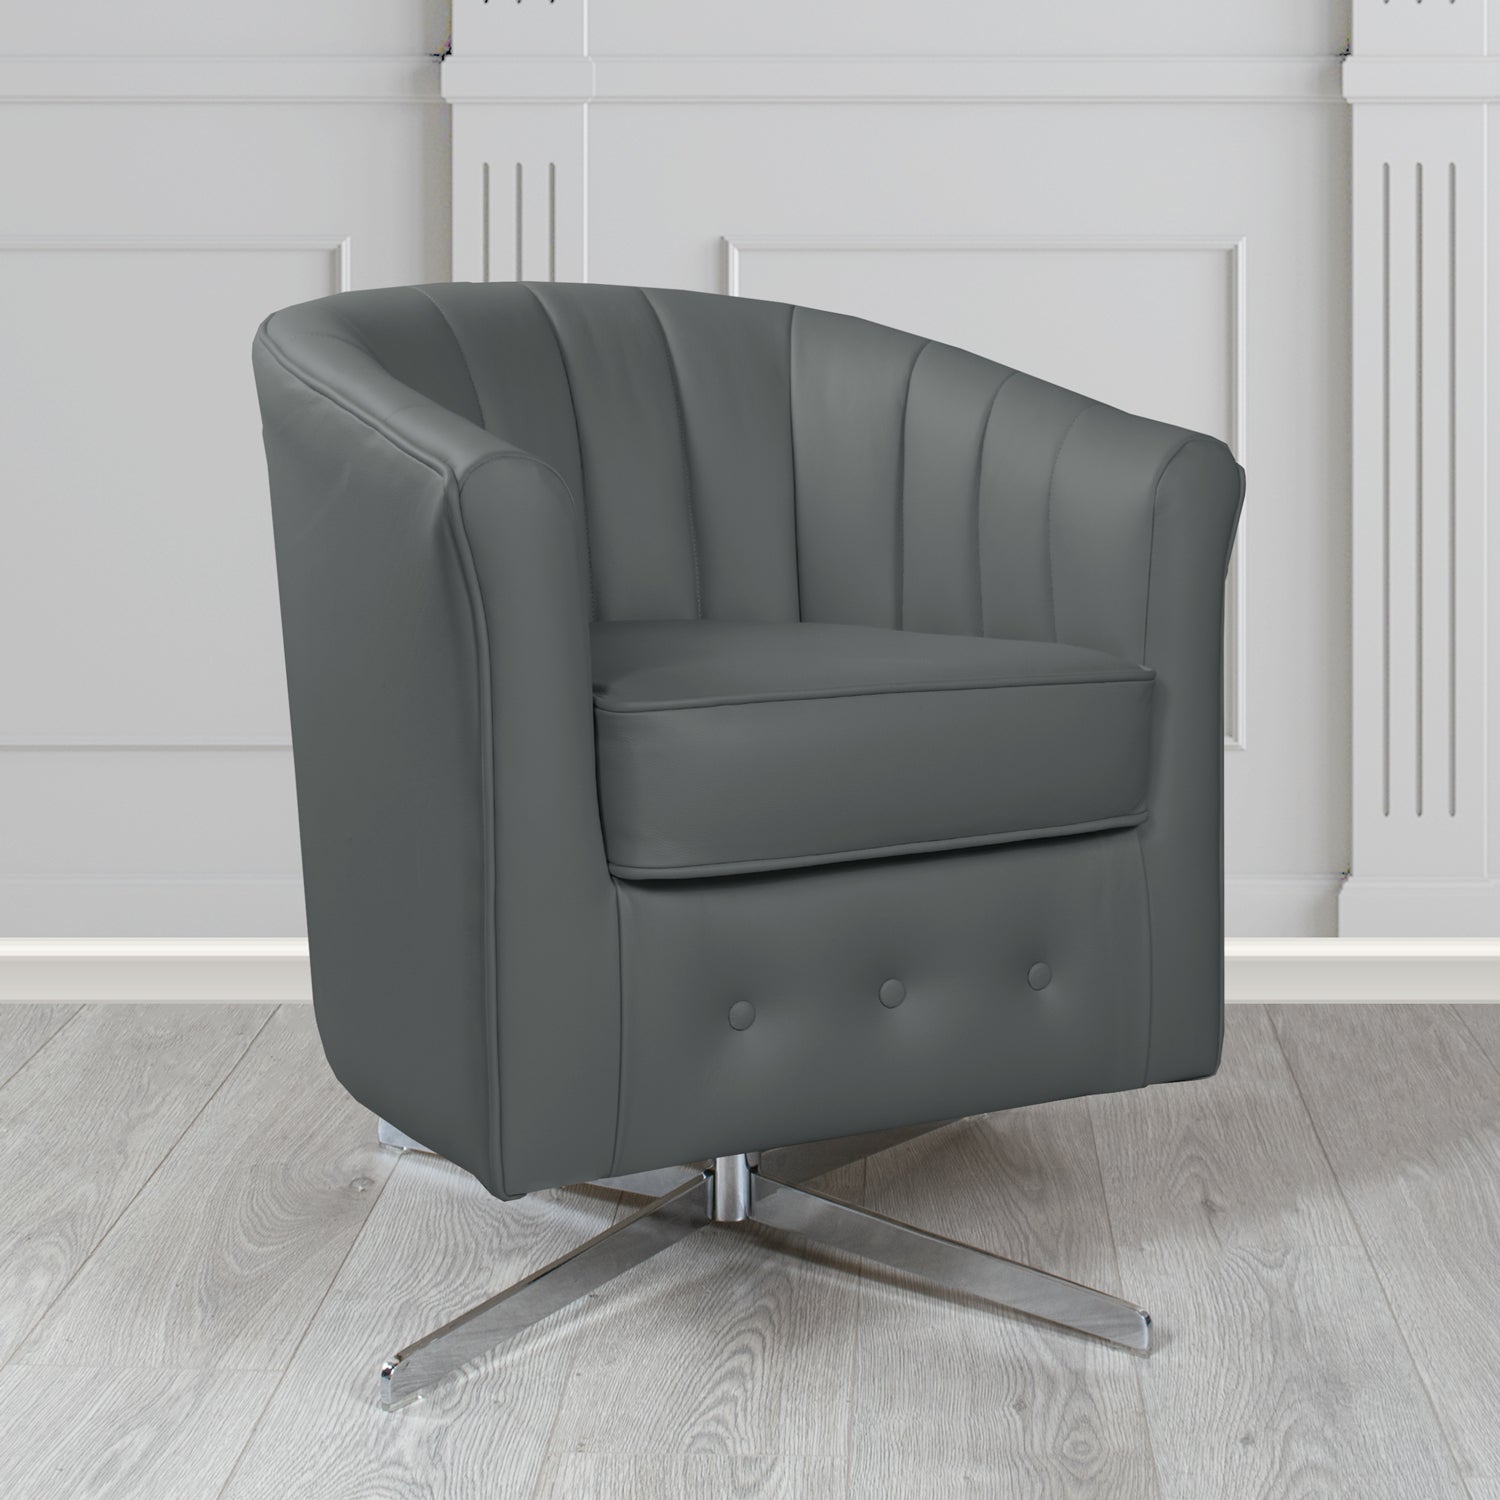 Doha Swivel Tub Chair in Vele Charcoal Grey Genuine Leather